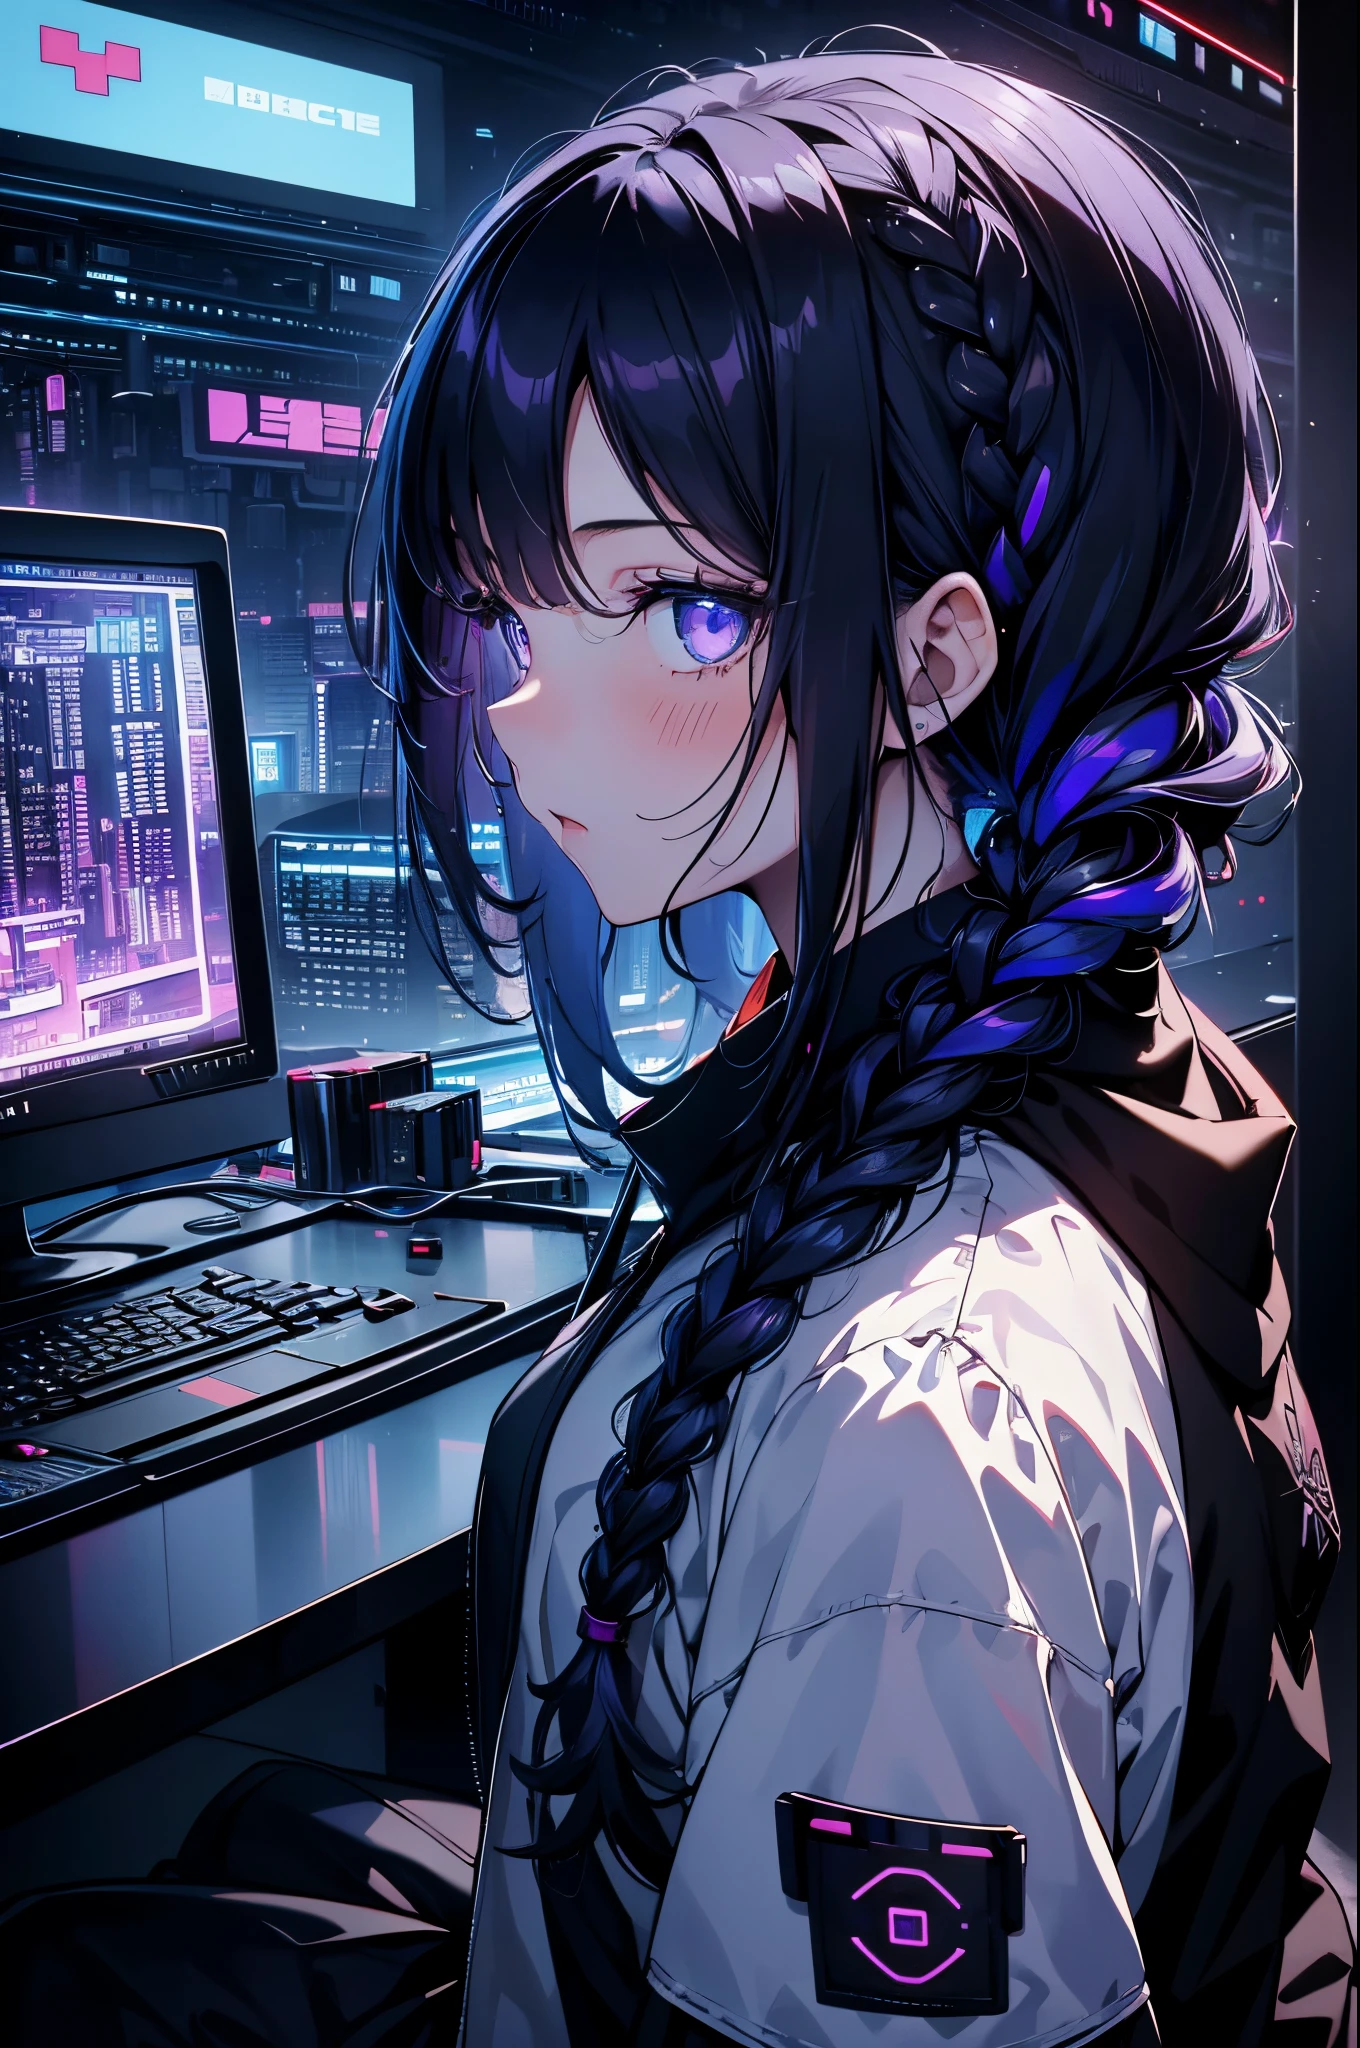 очень молодая девушка, Черная маска, белая кожа, код на компьютере, хакерский стиль, изгиб,сидя на、видно со стороны、глубокие фиолетовые оттенки, Темный, коса для волос, Темный blue hair, кабели, ретро, киберпанк, фон центра обработки данных, темно-фиолетовая тема, ночной город